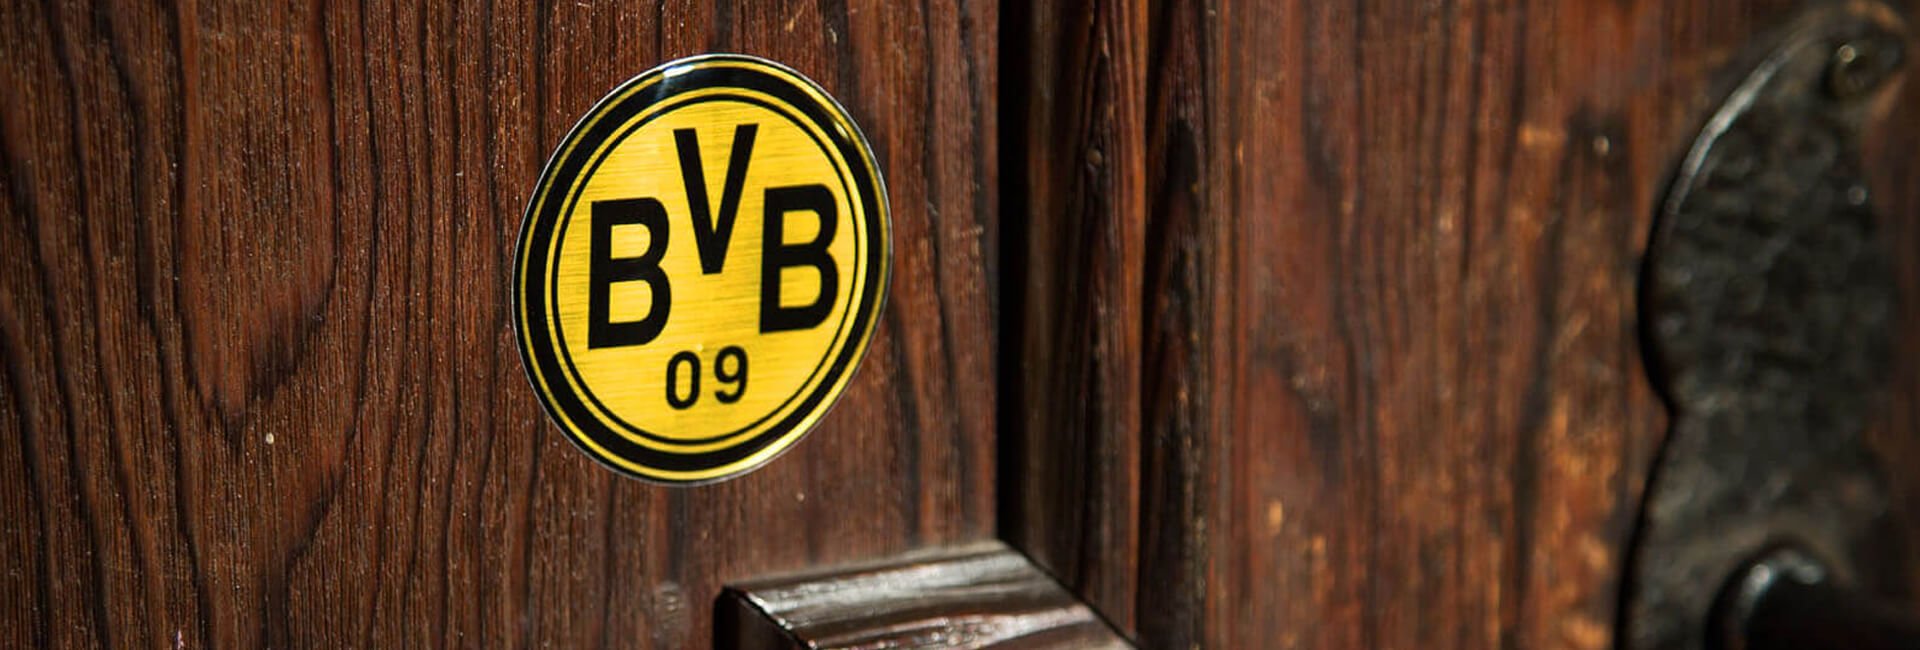 BVB-Backclip für iPhone 4|4S Schwarz Borussia Dortmund schwarzgelb ORIGINAL